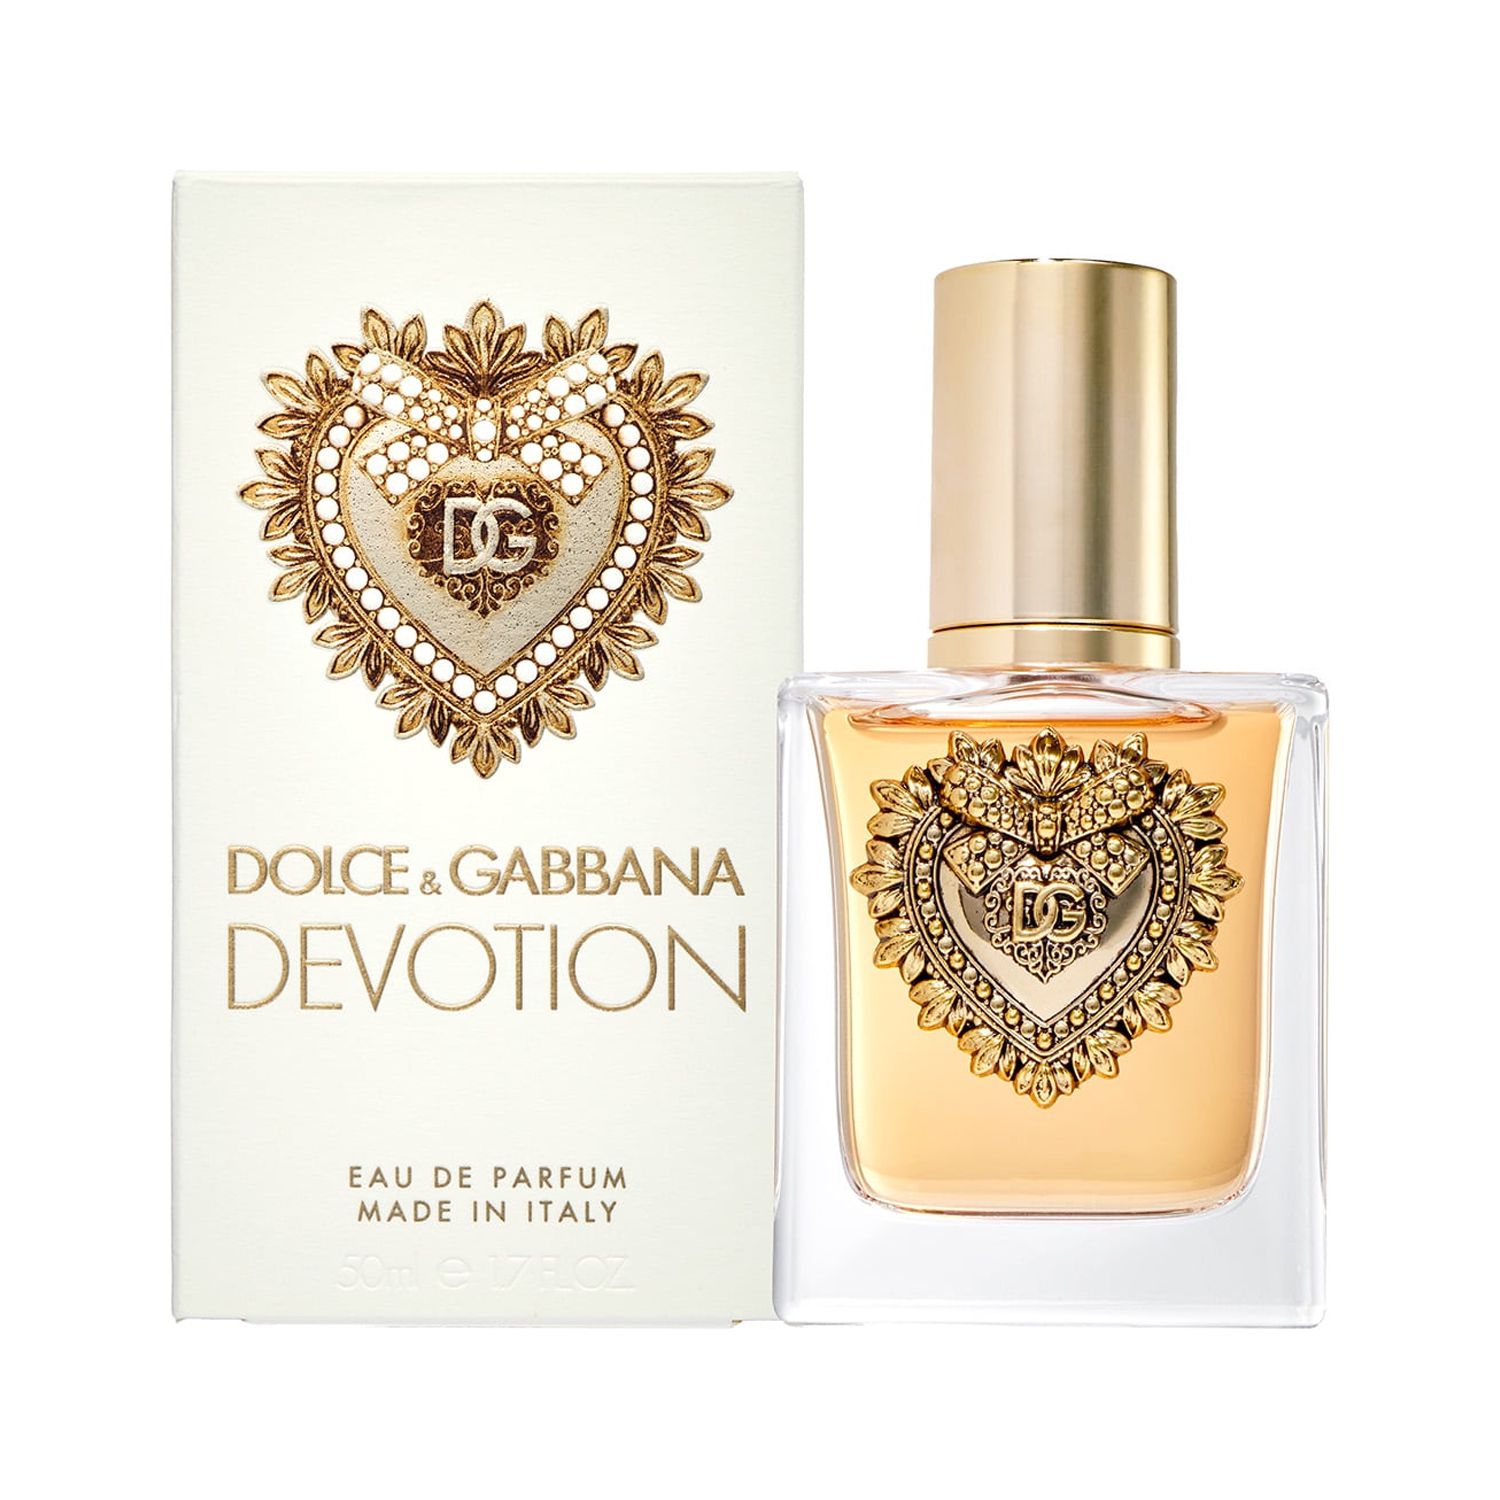 Dolce & Gabbana Devotion Eau de Parfum, Perfume for Women, 1.7 oz - image 2 of 5